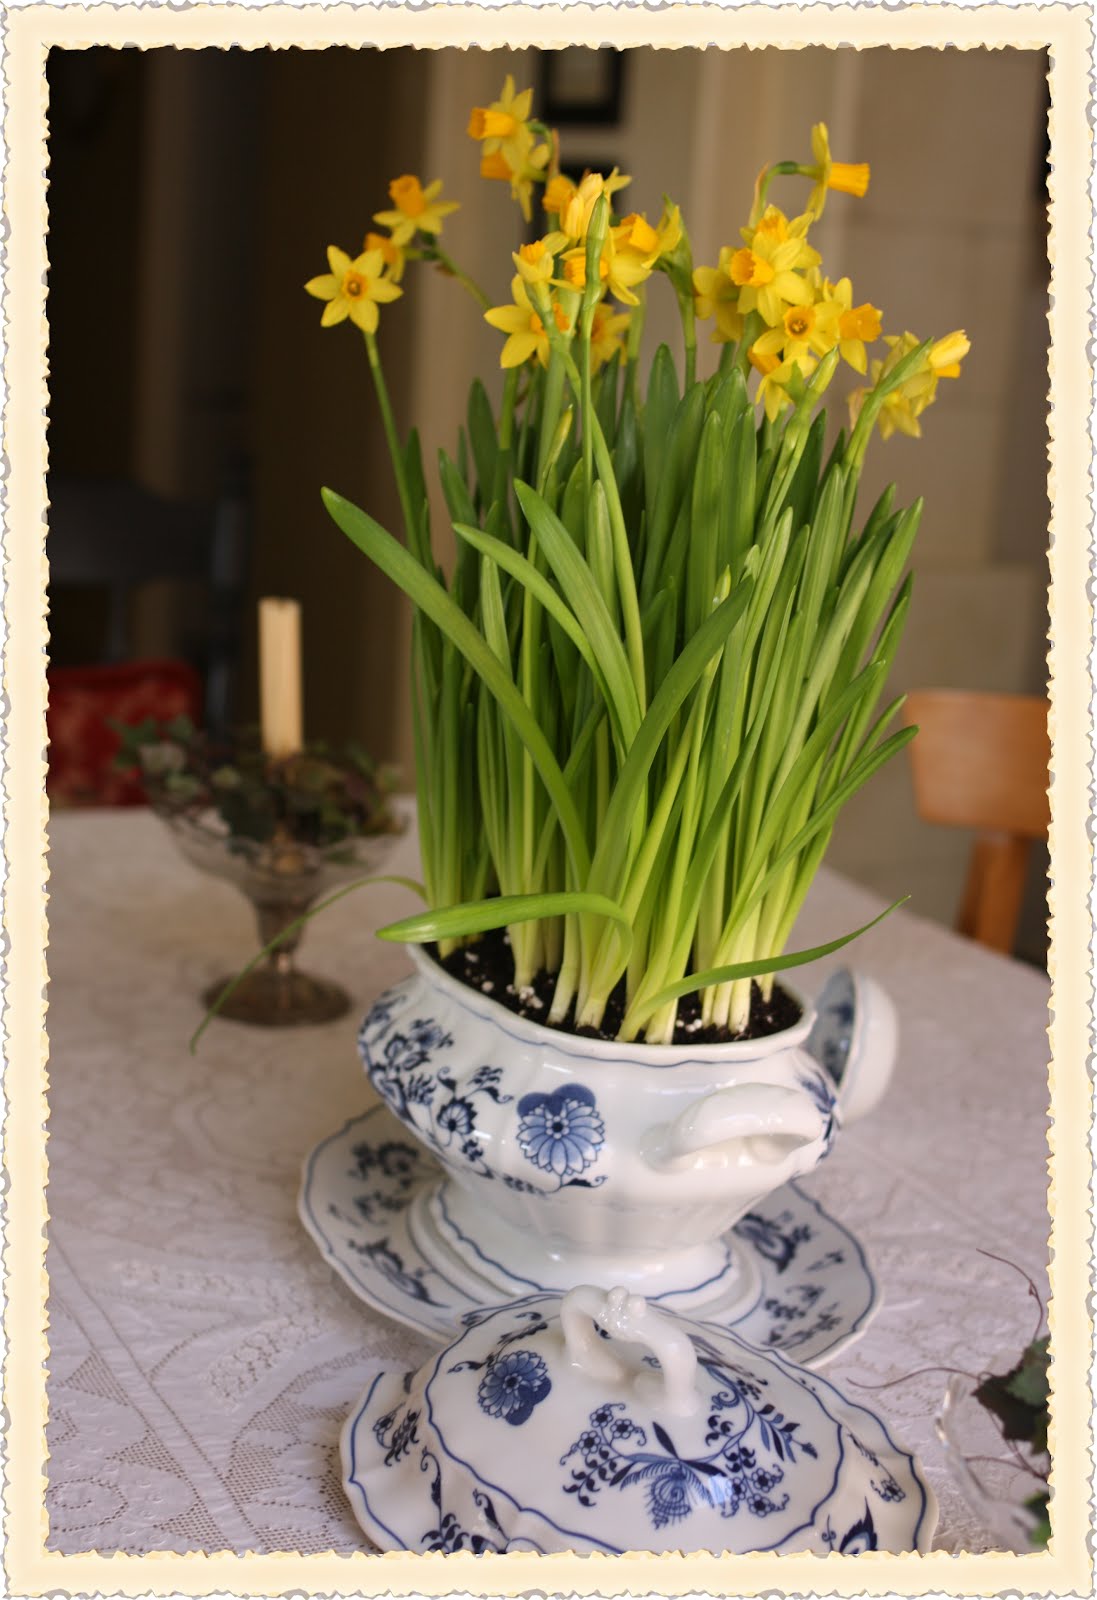 Rose Vignettes: Fresh-Cut Friday #20 Daffodils